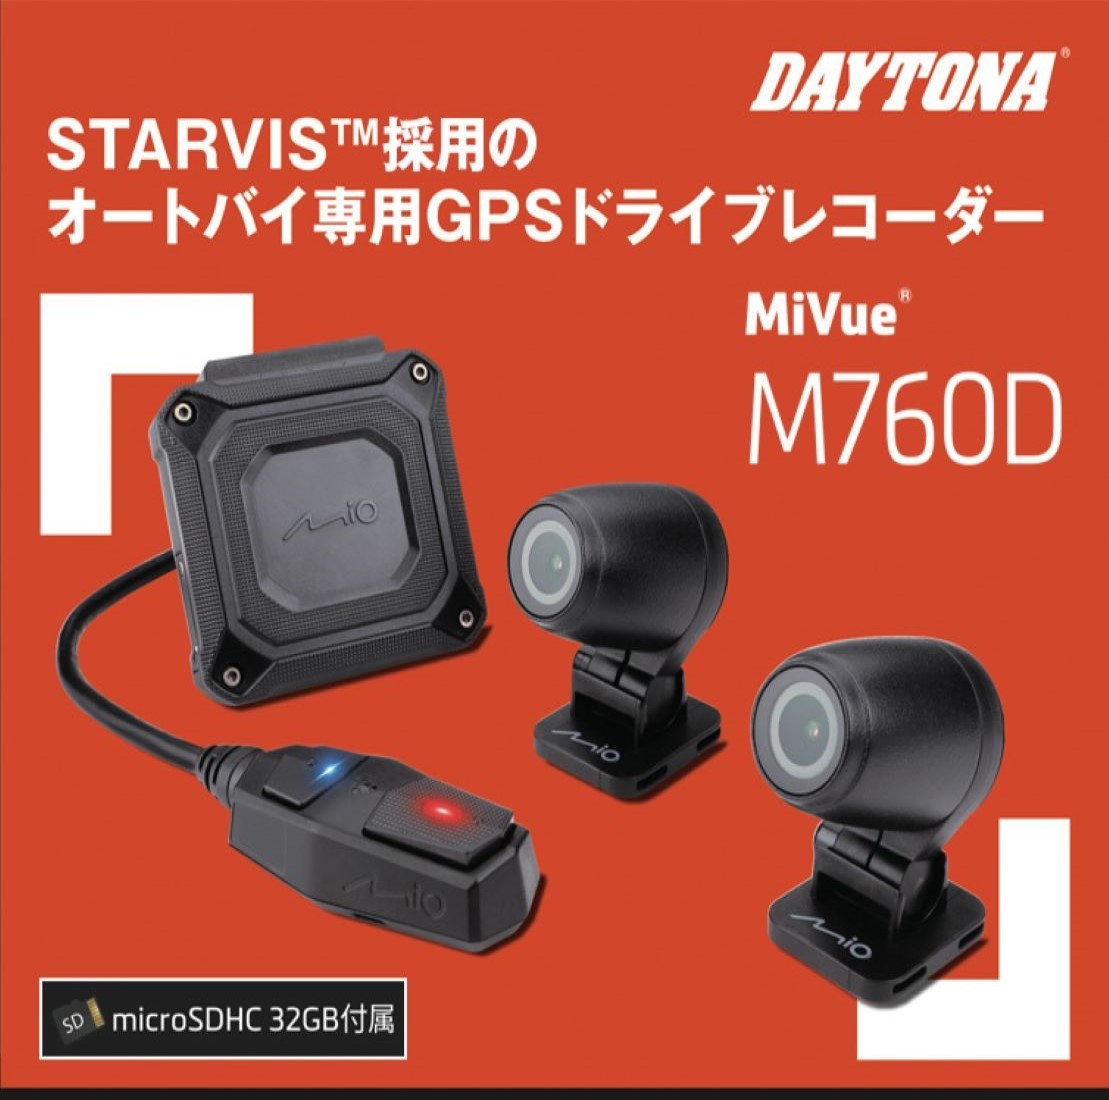 DAYTONA ドライブレコーダー 前後2カメラ デイトナ バイク用 200万画素 フルHD 防水 防塵 LED信号 Gセンサー GPS MiVue M760D 17100